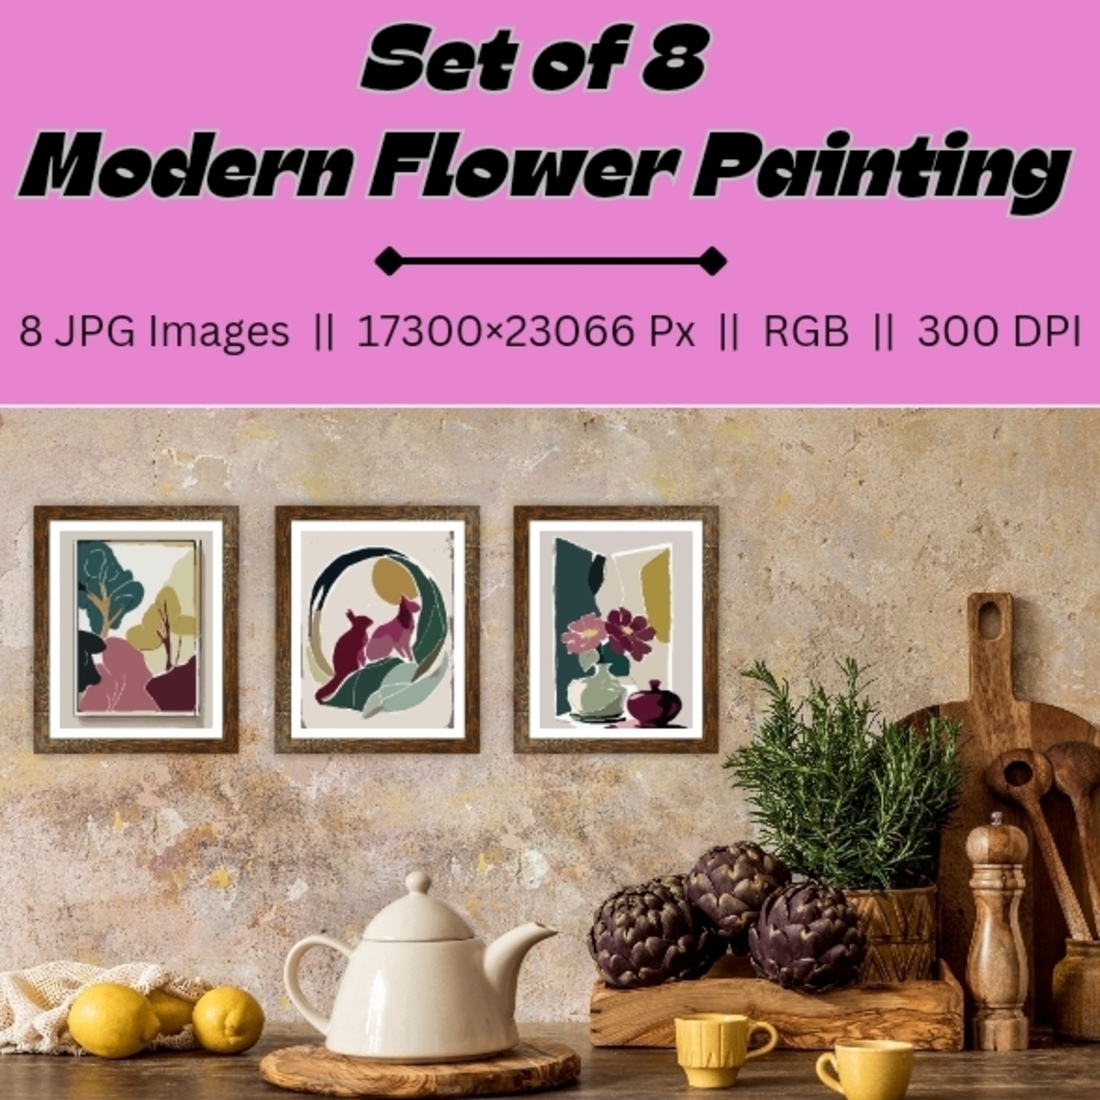 Modern Flower Paintings Art for Home Decor cover image.